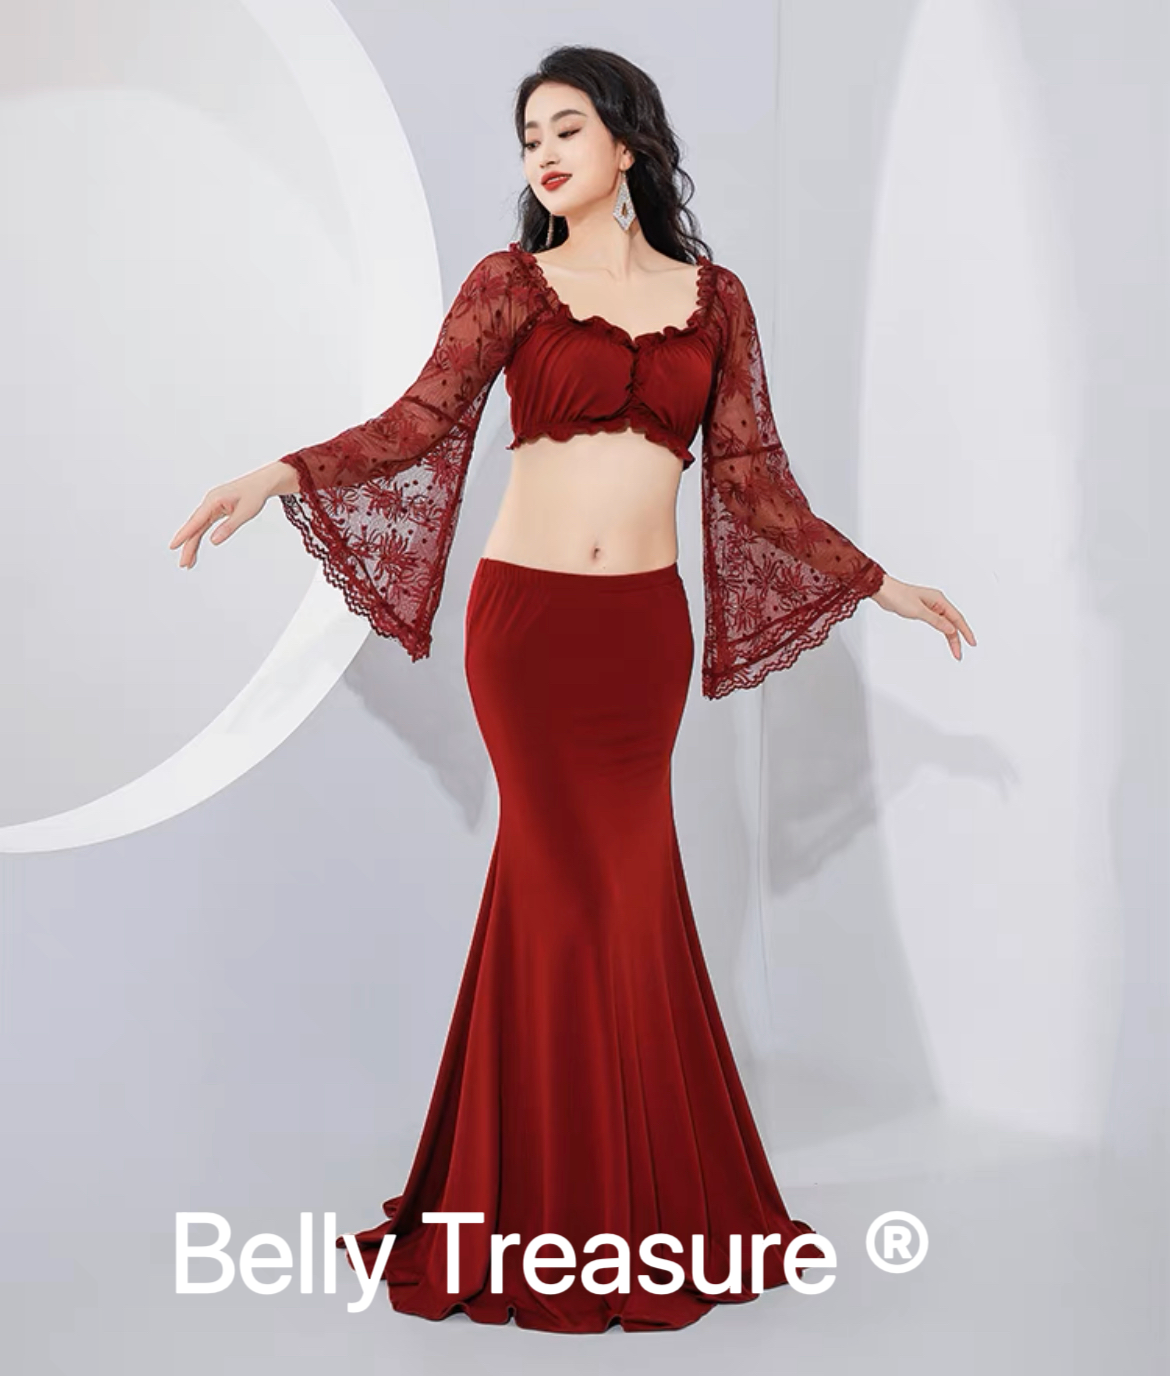 Belly Treasure｜ベリーダンス衣装・トライバル衣装専門店